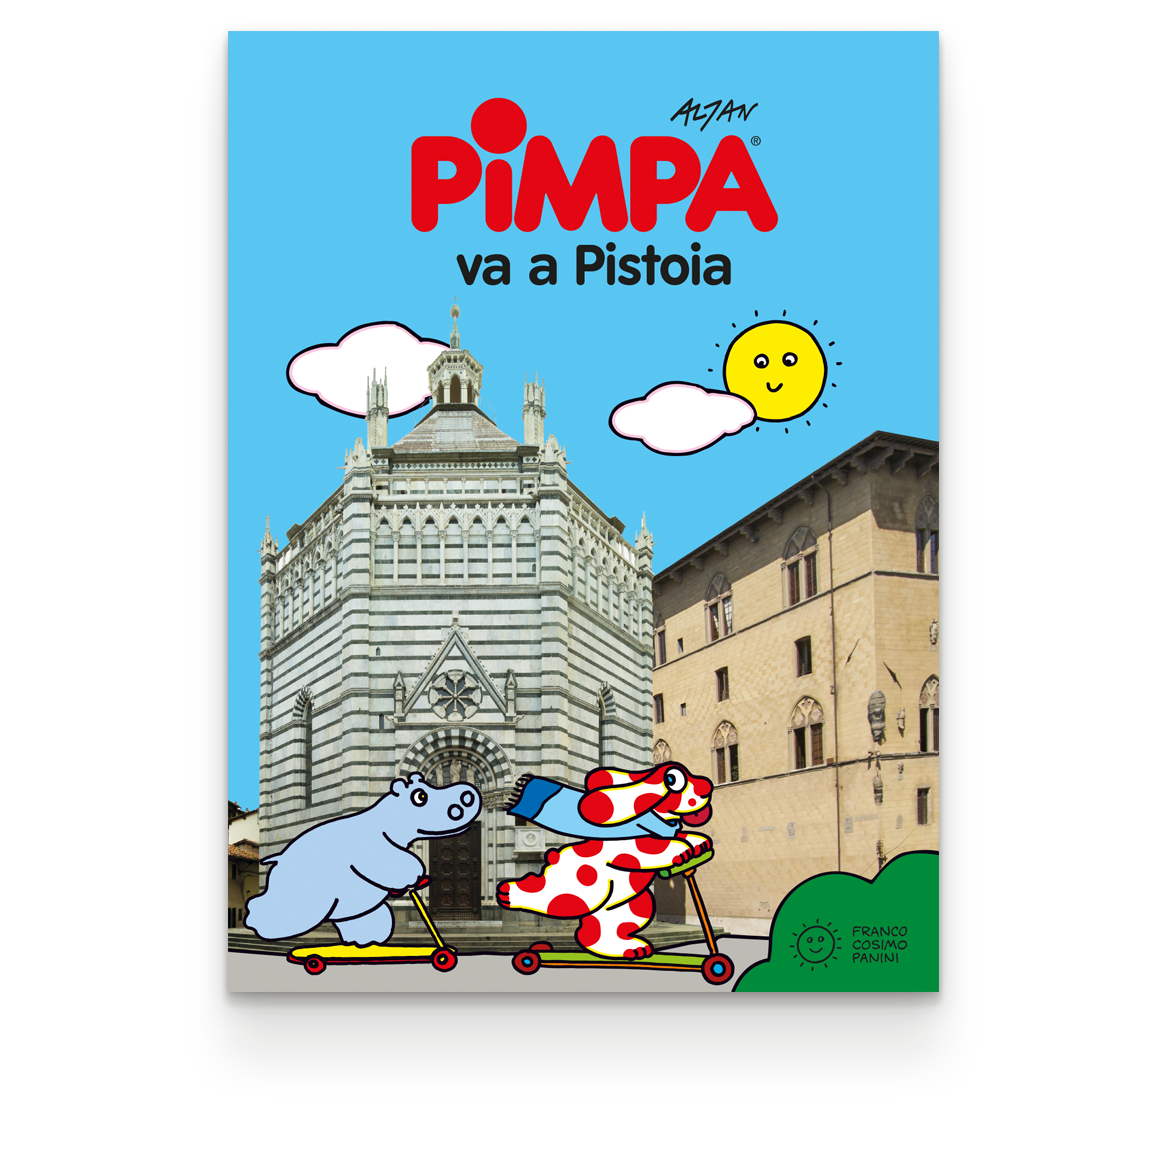 Pimpa va a Pistoia